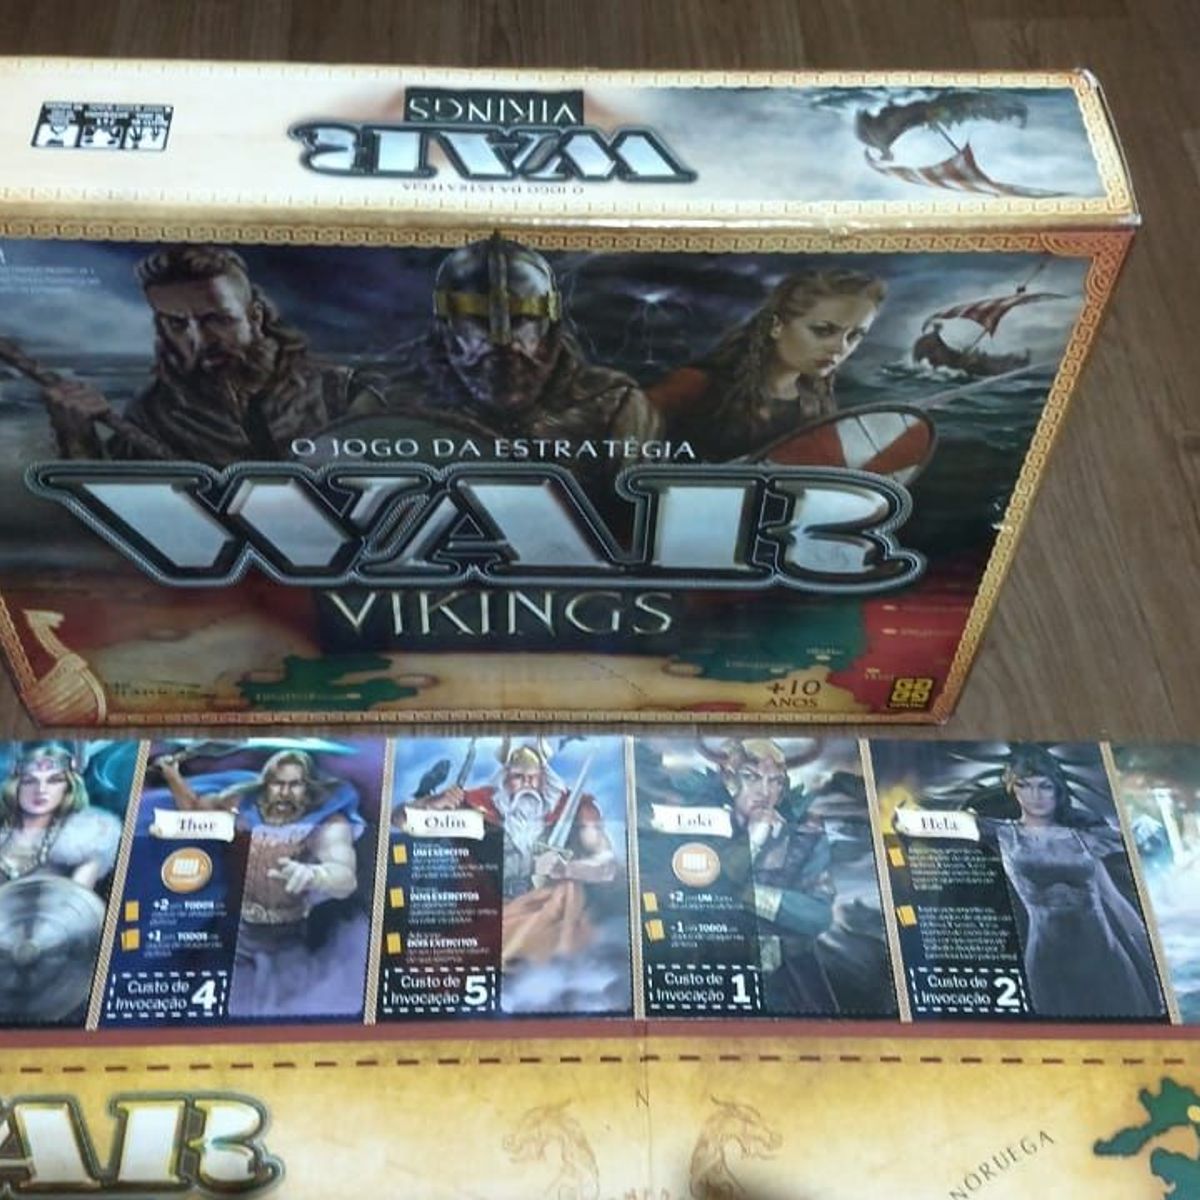 Jogo War Vikings / War Vikings game - Grow